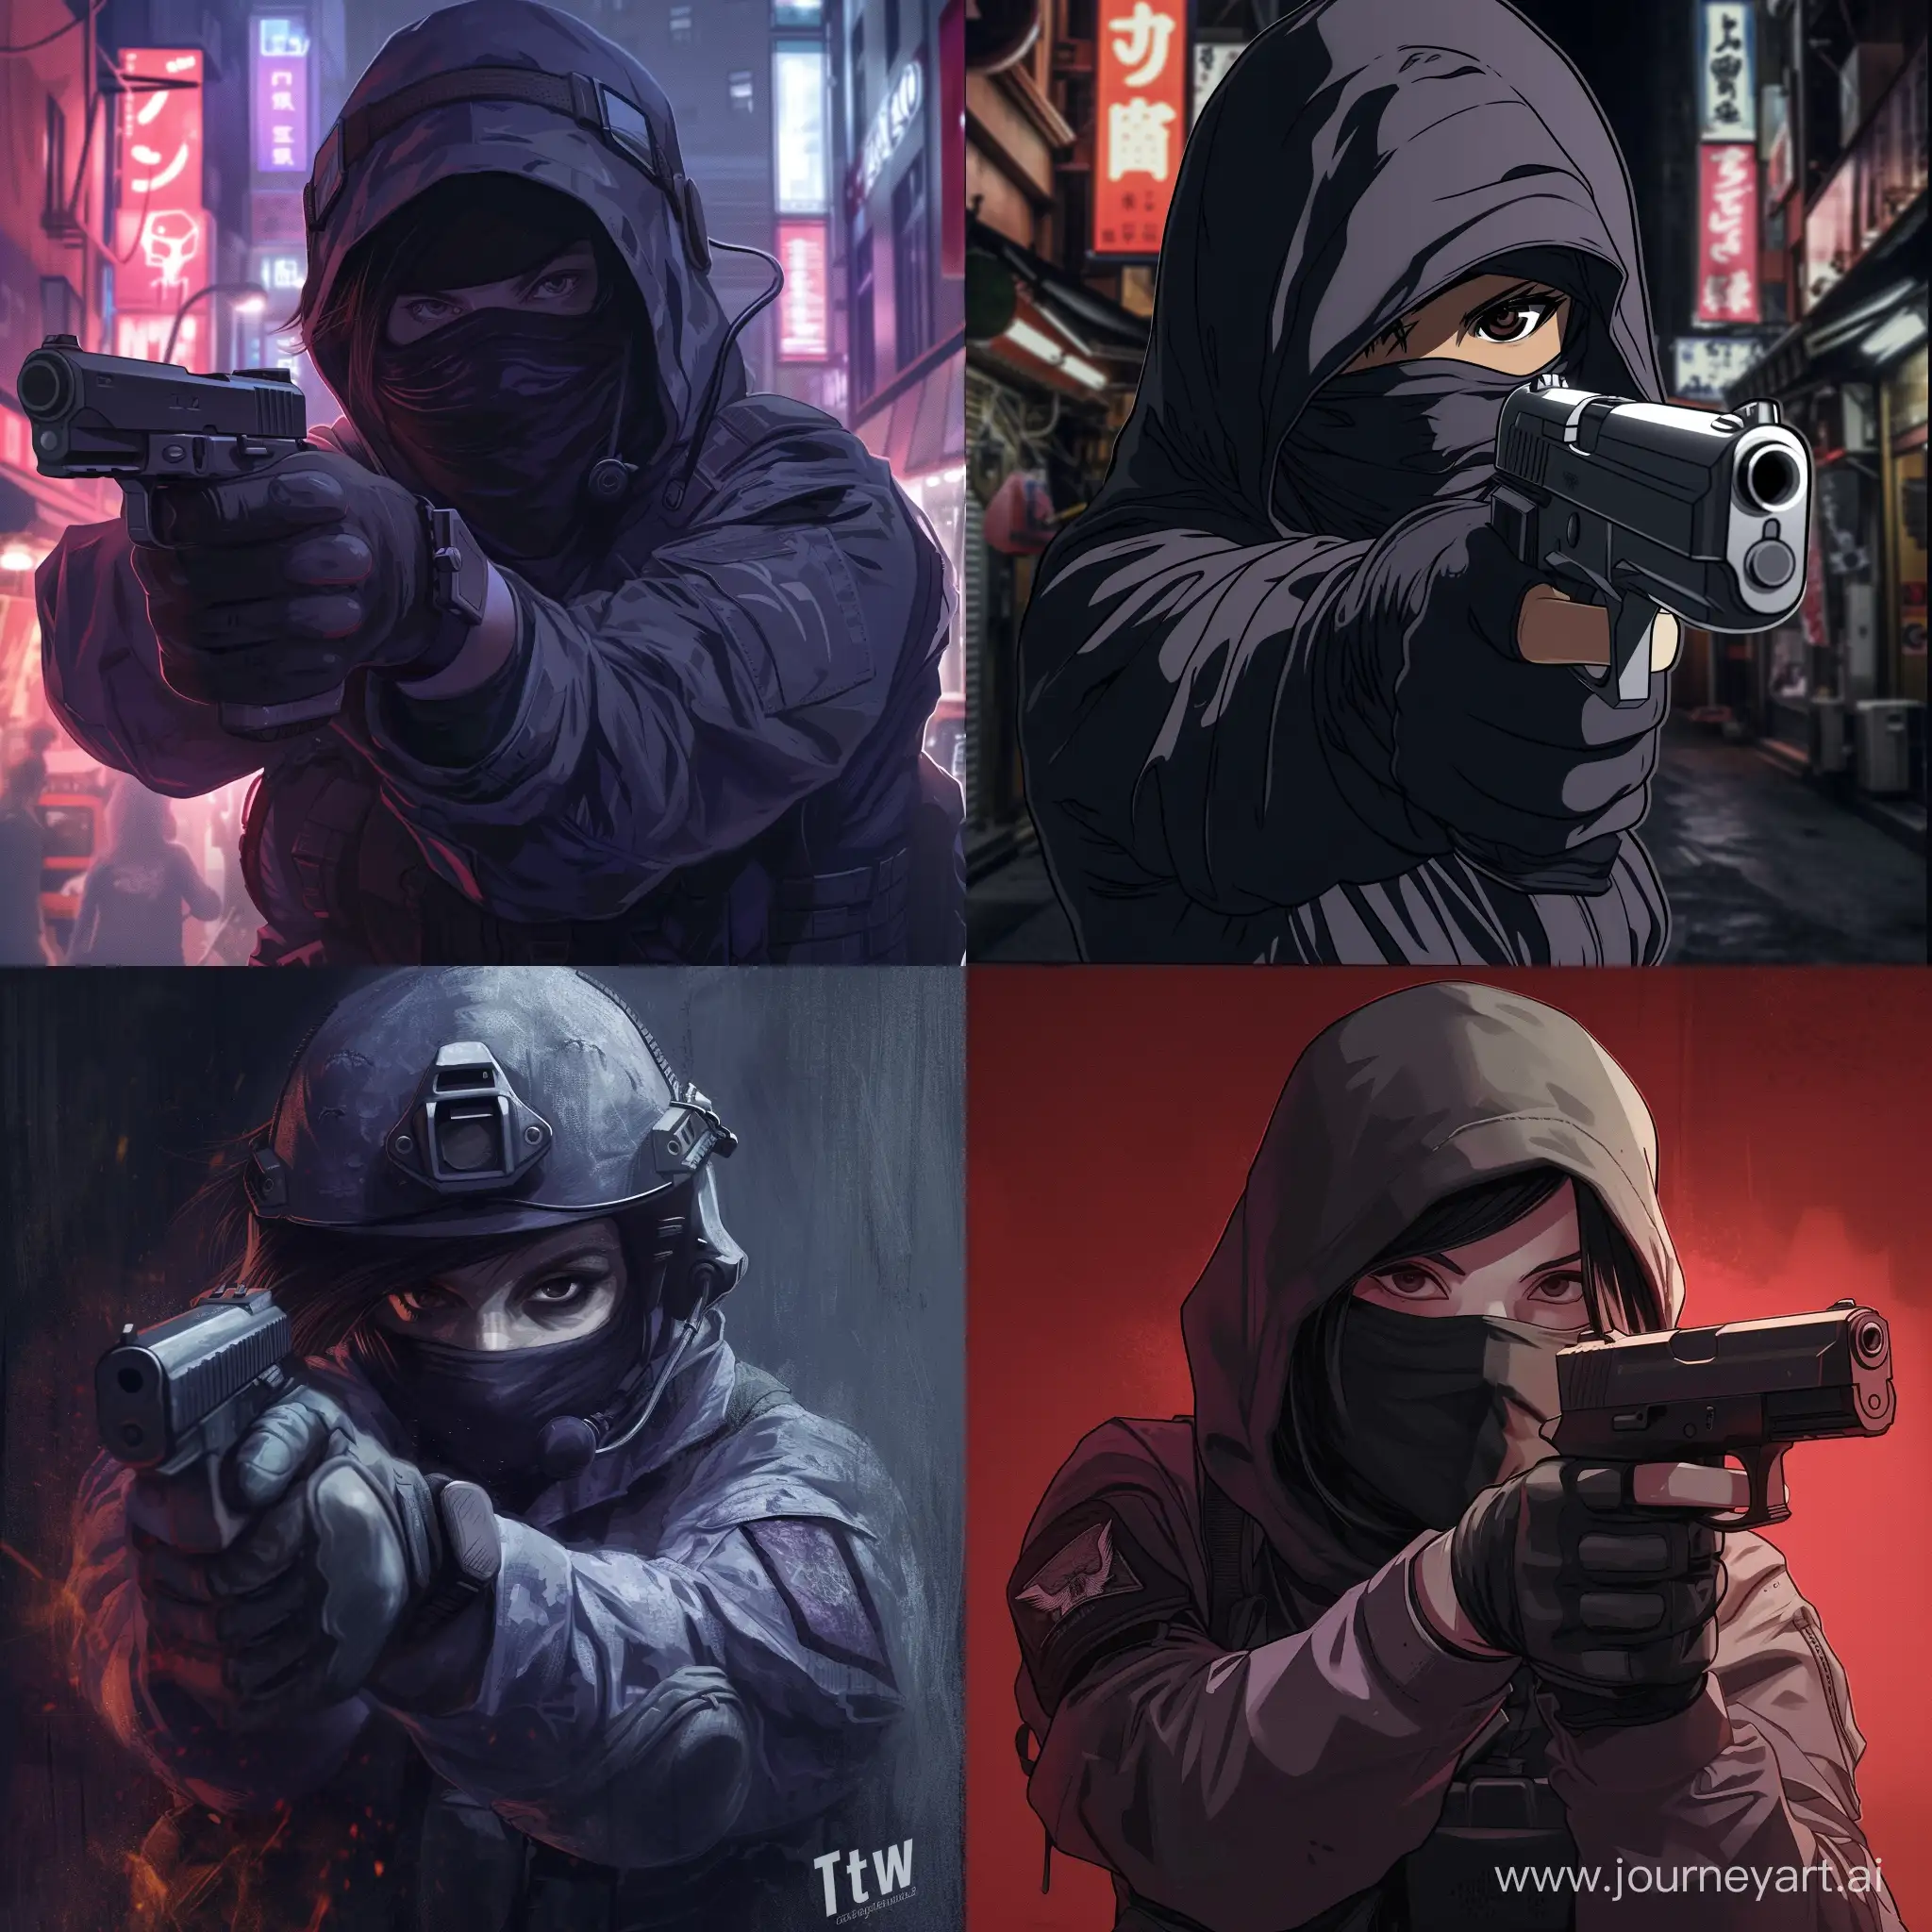 AnimeInspired-CounterStrike-2-Terrorist-with-Pistol-Banner